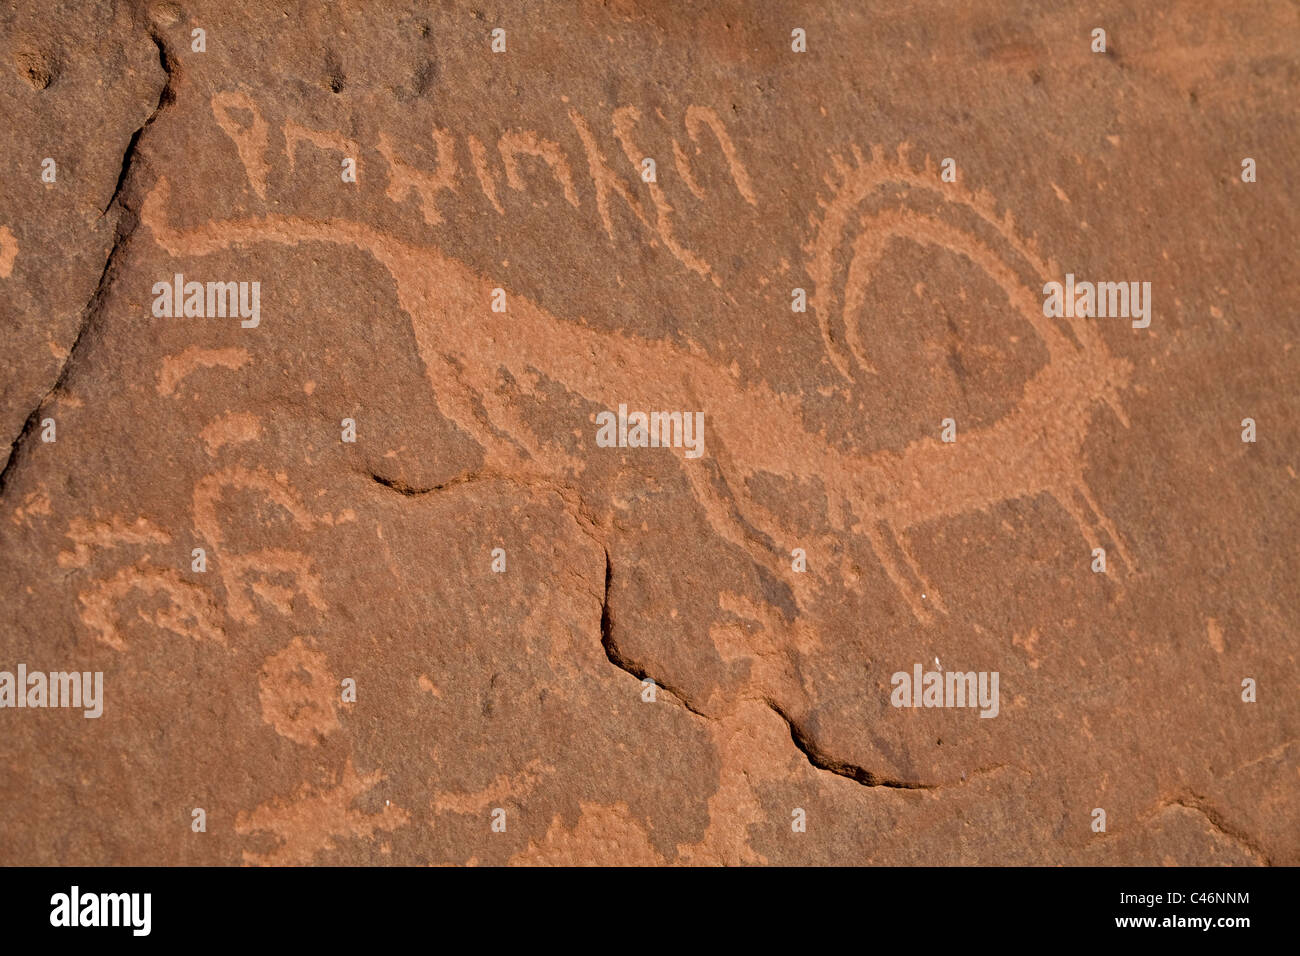 Fotografia di una parete scolpita nel deserto giordano Foto Stock